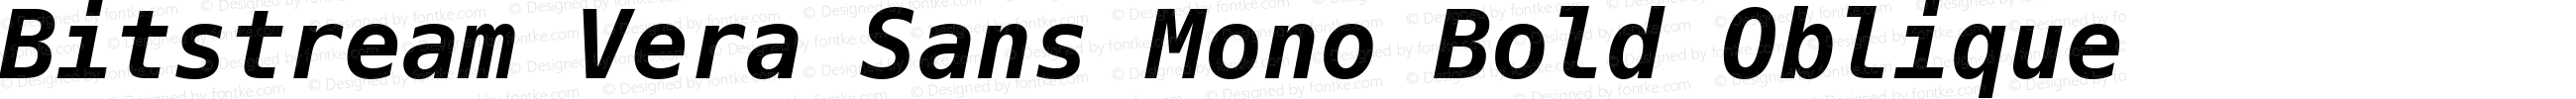 Bitstream Vera Sans Mono Bold Oblique Nerd Font Plus Font Awesome Plus Octicons Plus Pomicons Windows Compatible